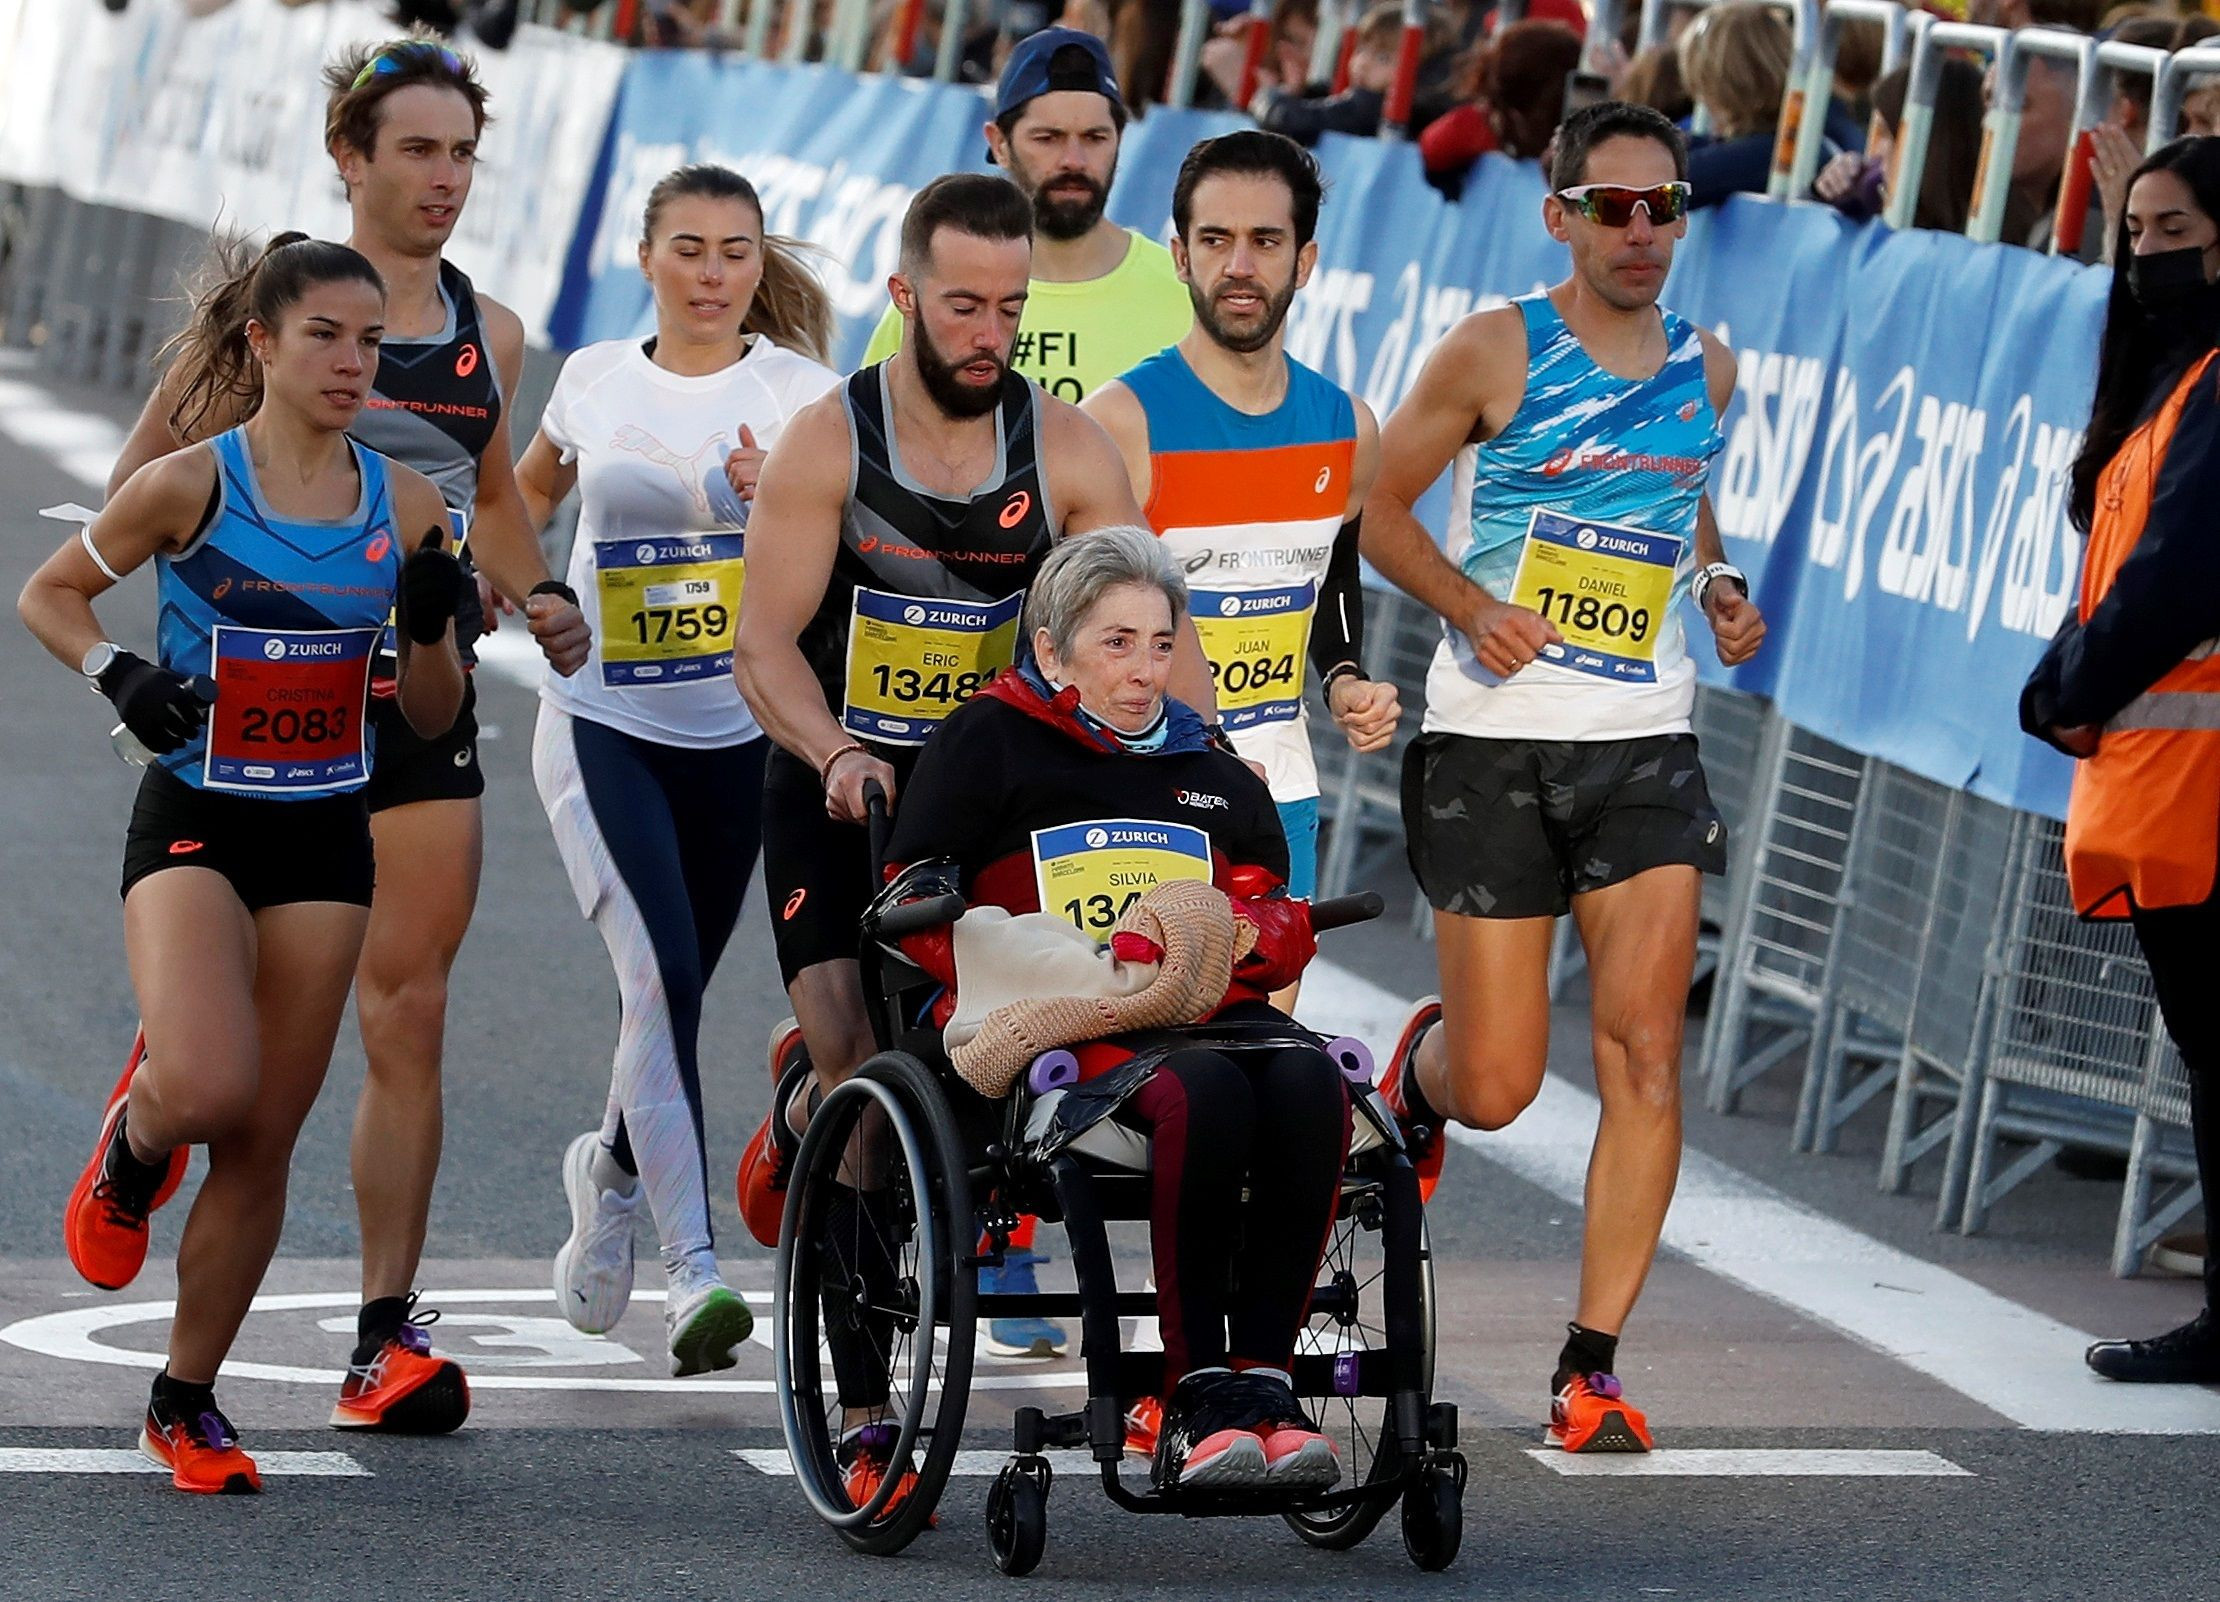 El deportista Eric Domingo (c), batió el récord Guinness de una maratón empujando la silla de ruedas de su madre Silvia, compitiendo en la 42ª edición del Zurich Maratón de Barcelona para visibilizar la esclerosis múltiple / EFE- Andreu Dalmau